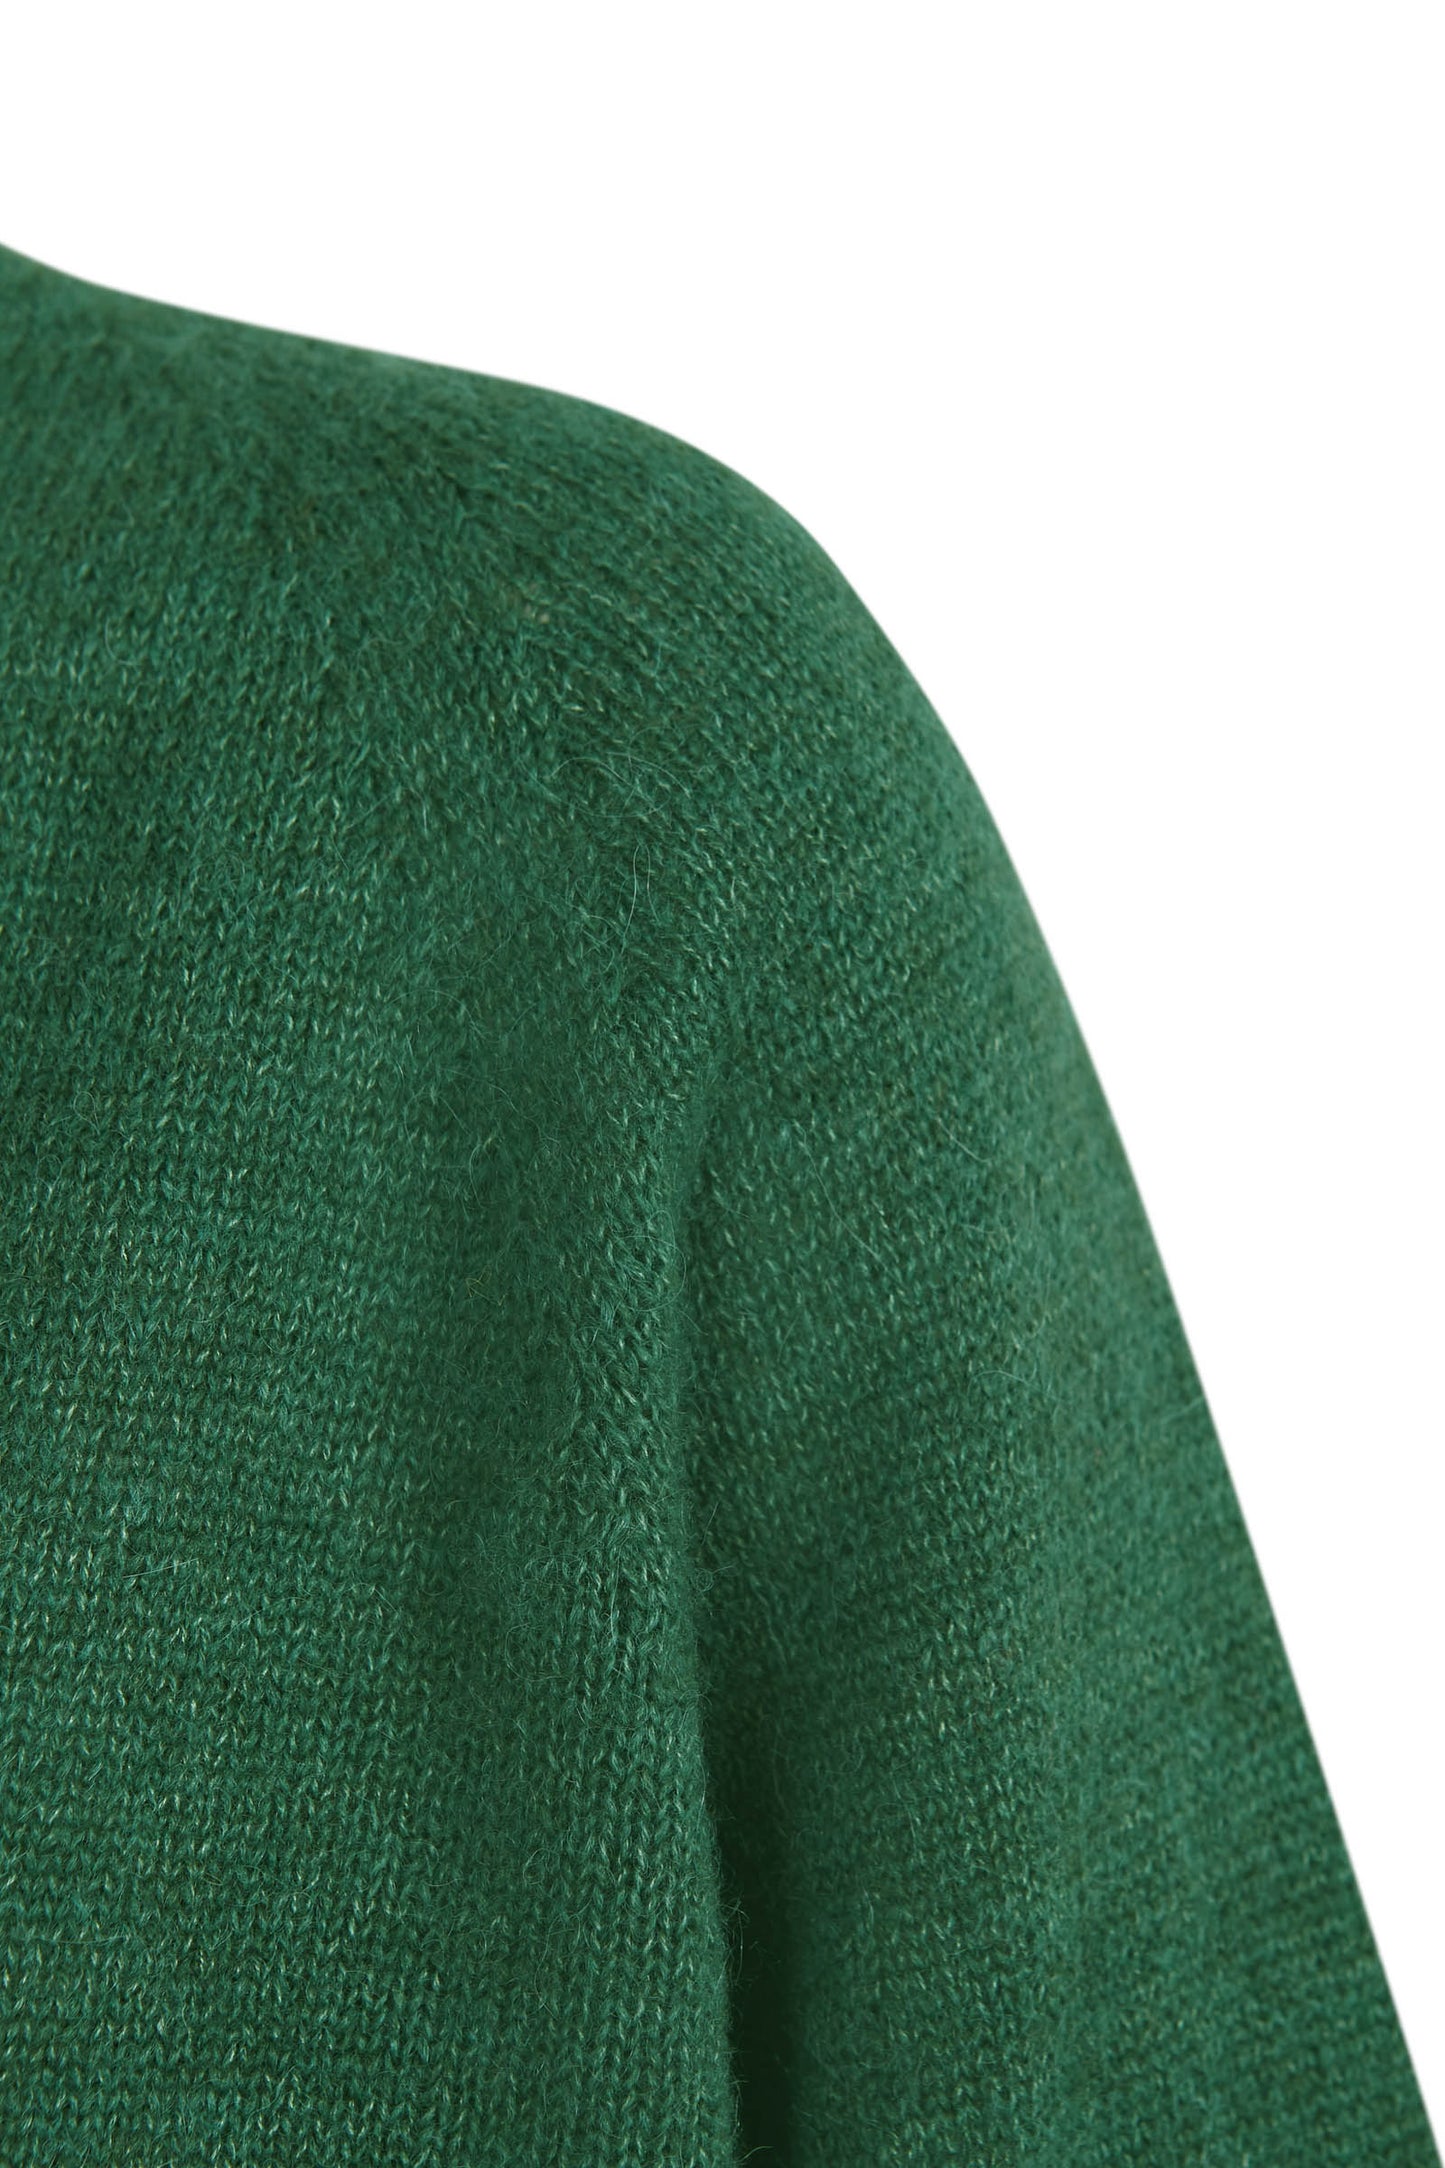 Mar, chaqueta verde en baby alpaca y cachemir y seda